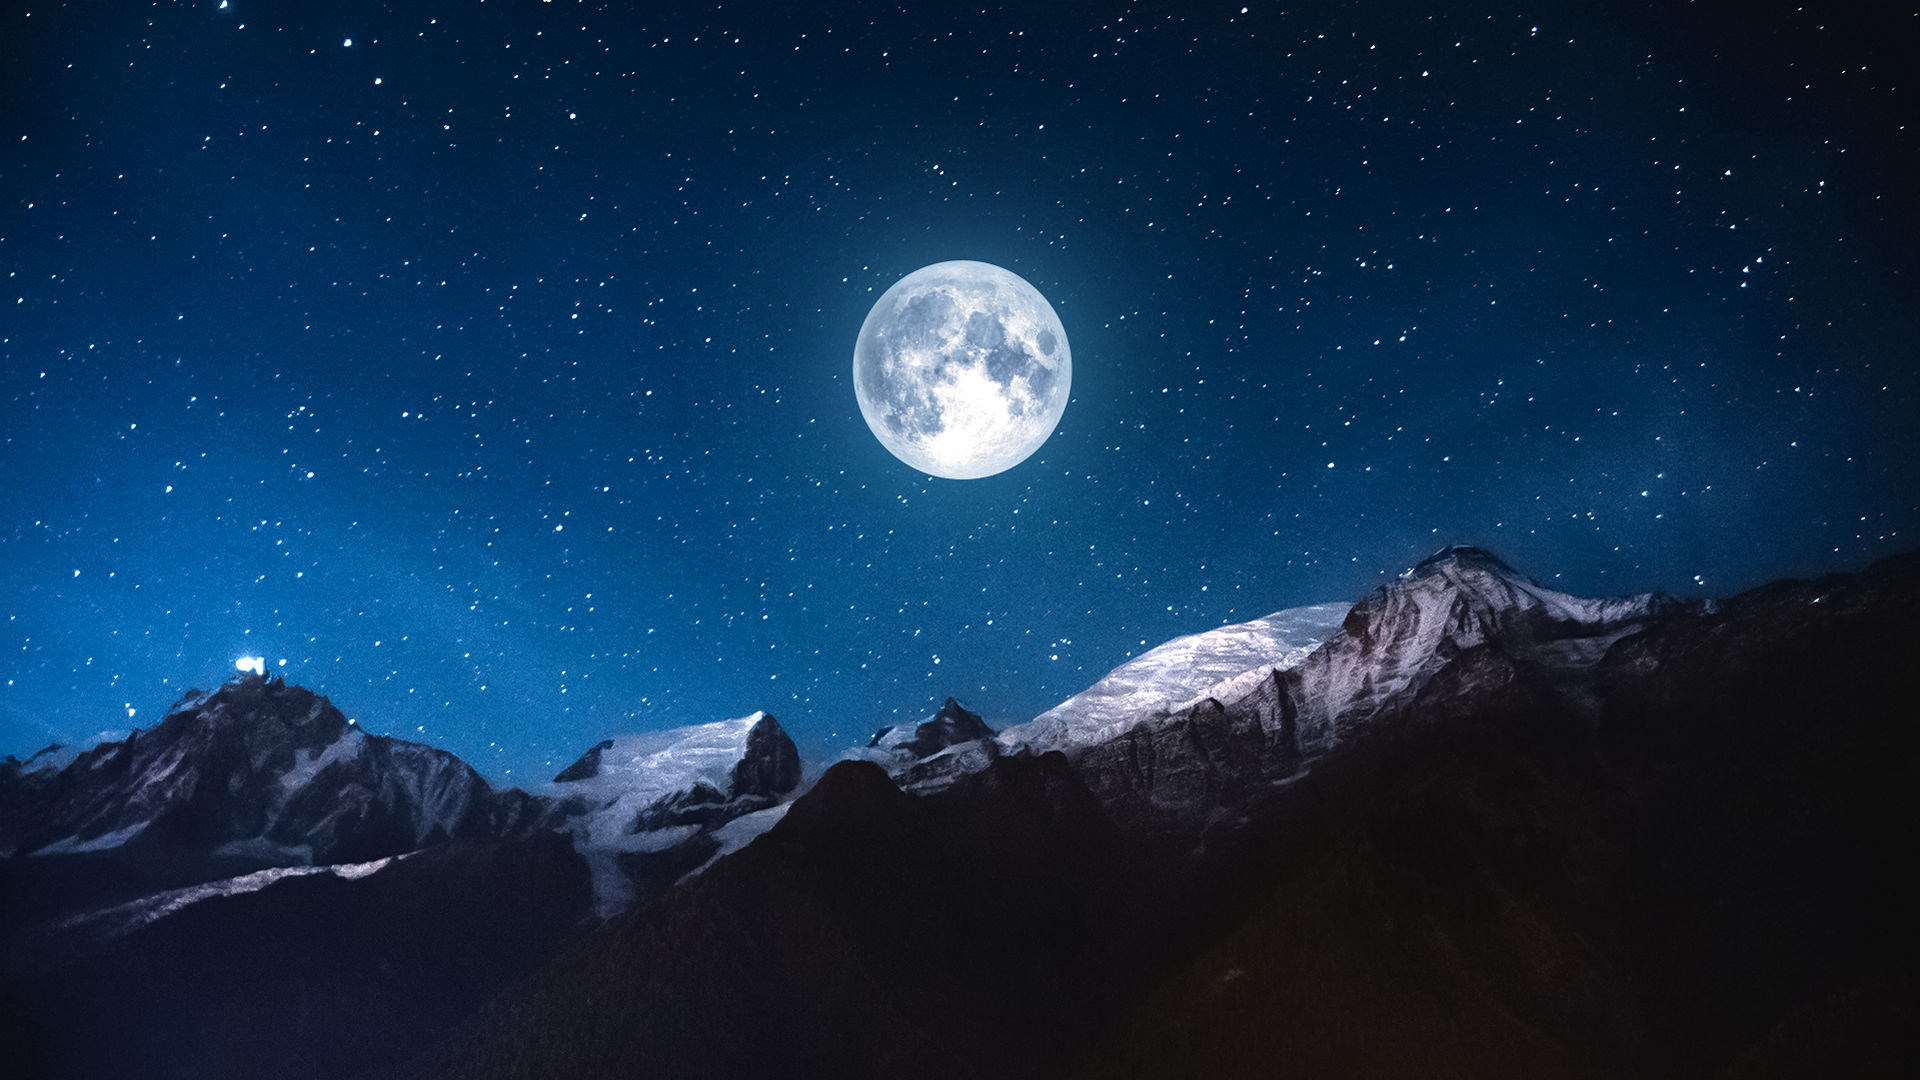 A Lua Cheia do Lobo ilumina o céu de inverno